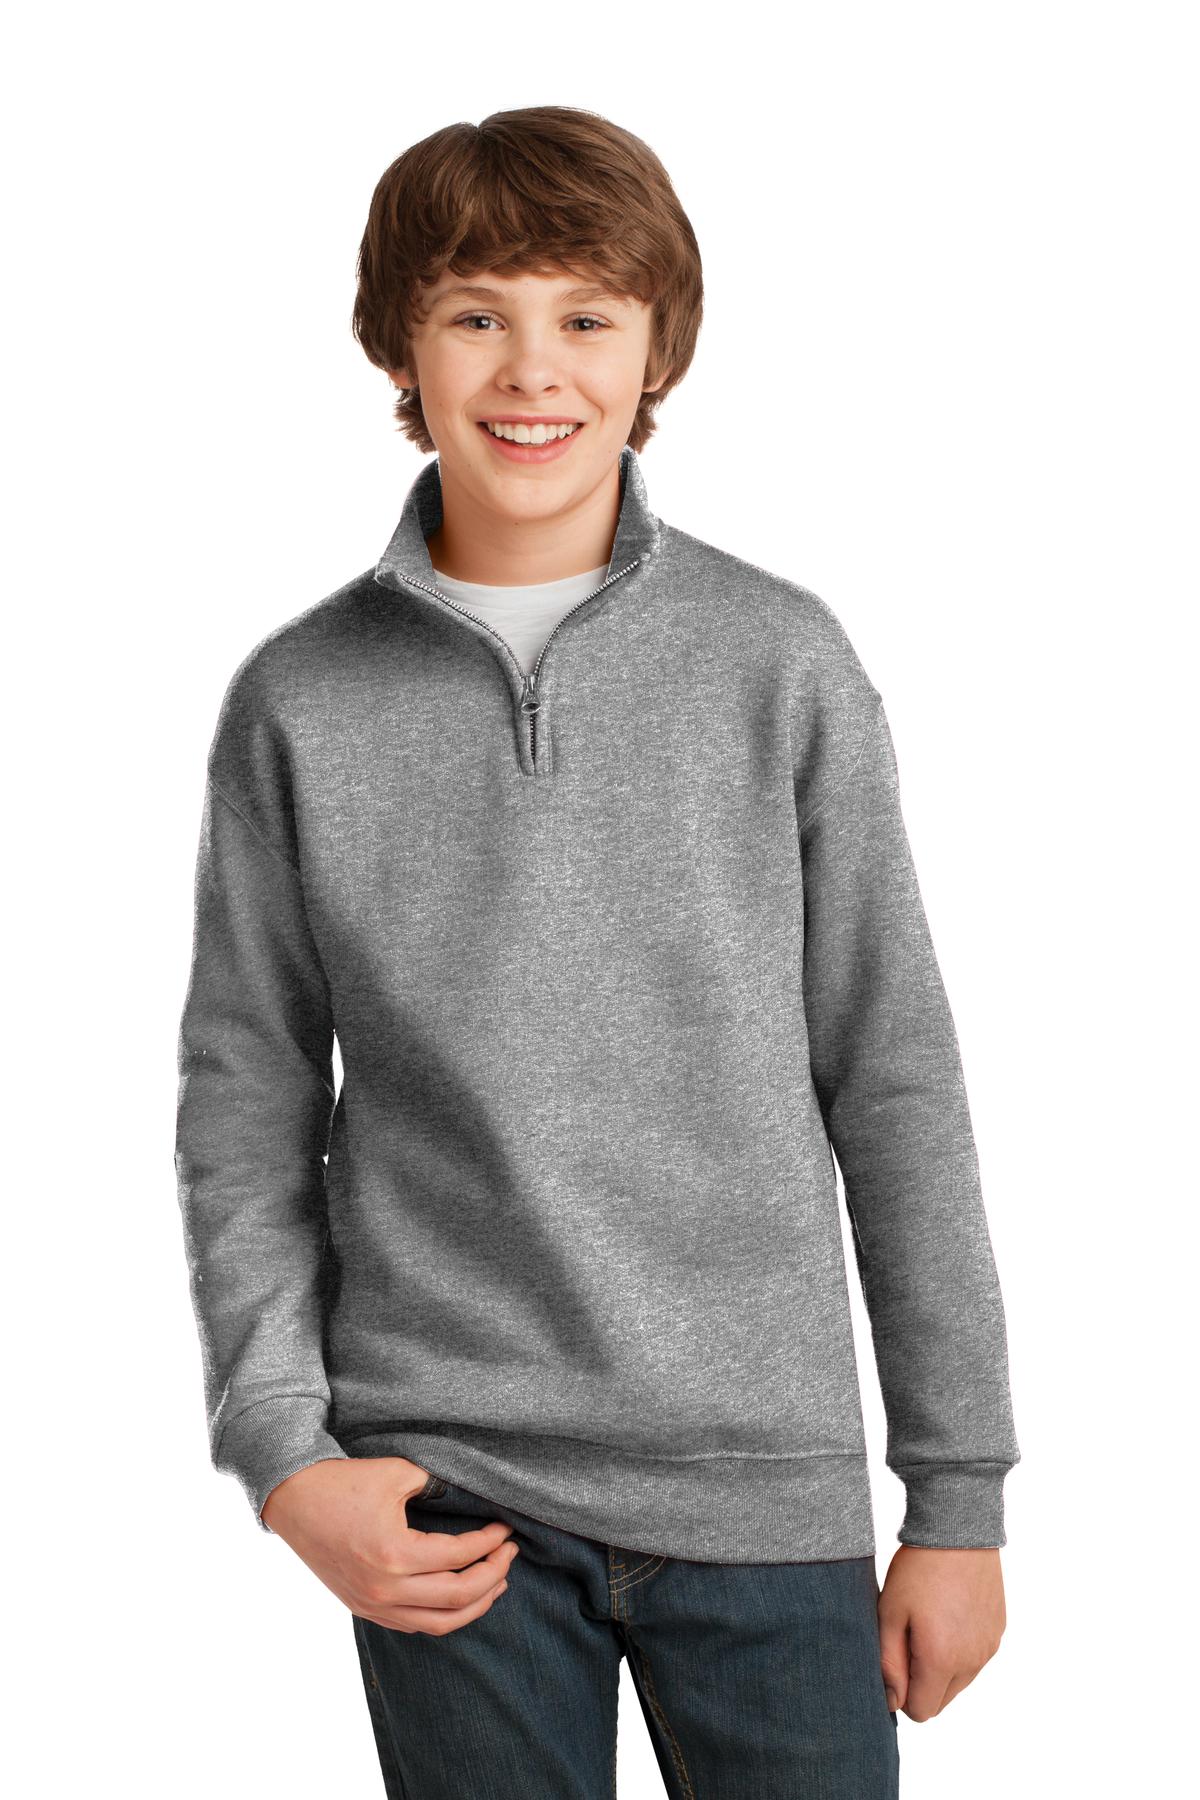 JERZEES® Youth NuBlend® 1/4-Zip Cadet Collar Sweatshirt. 995Y